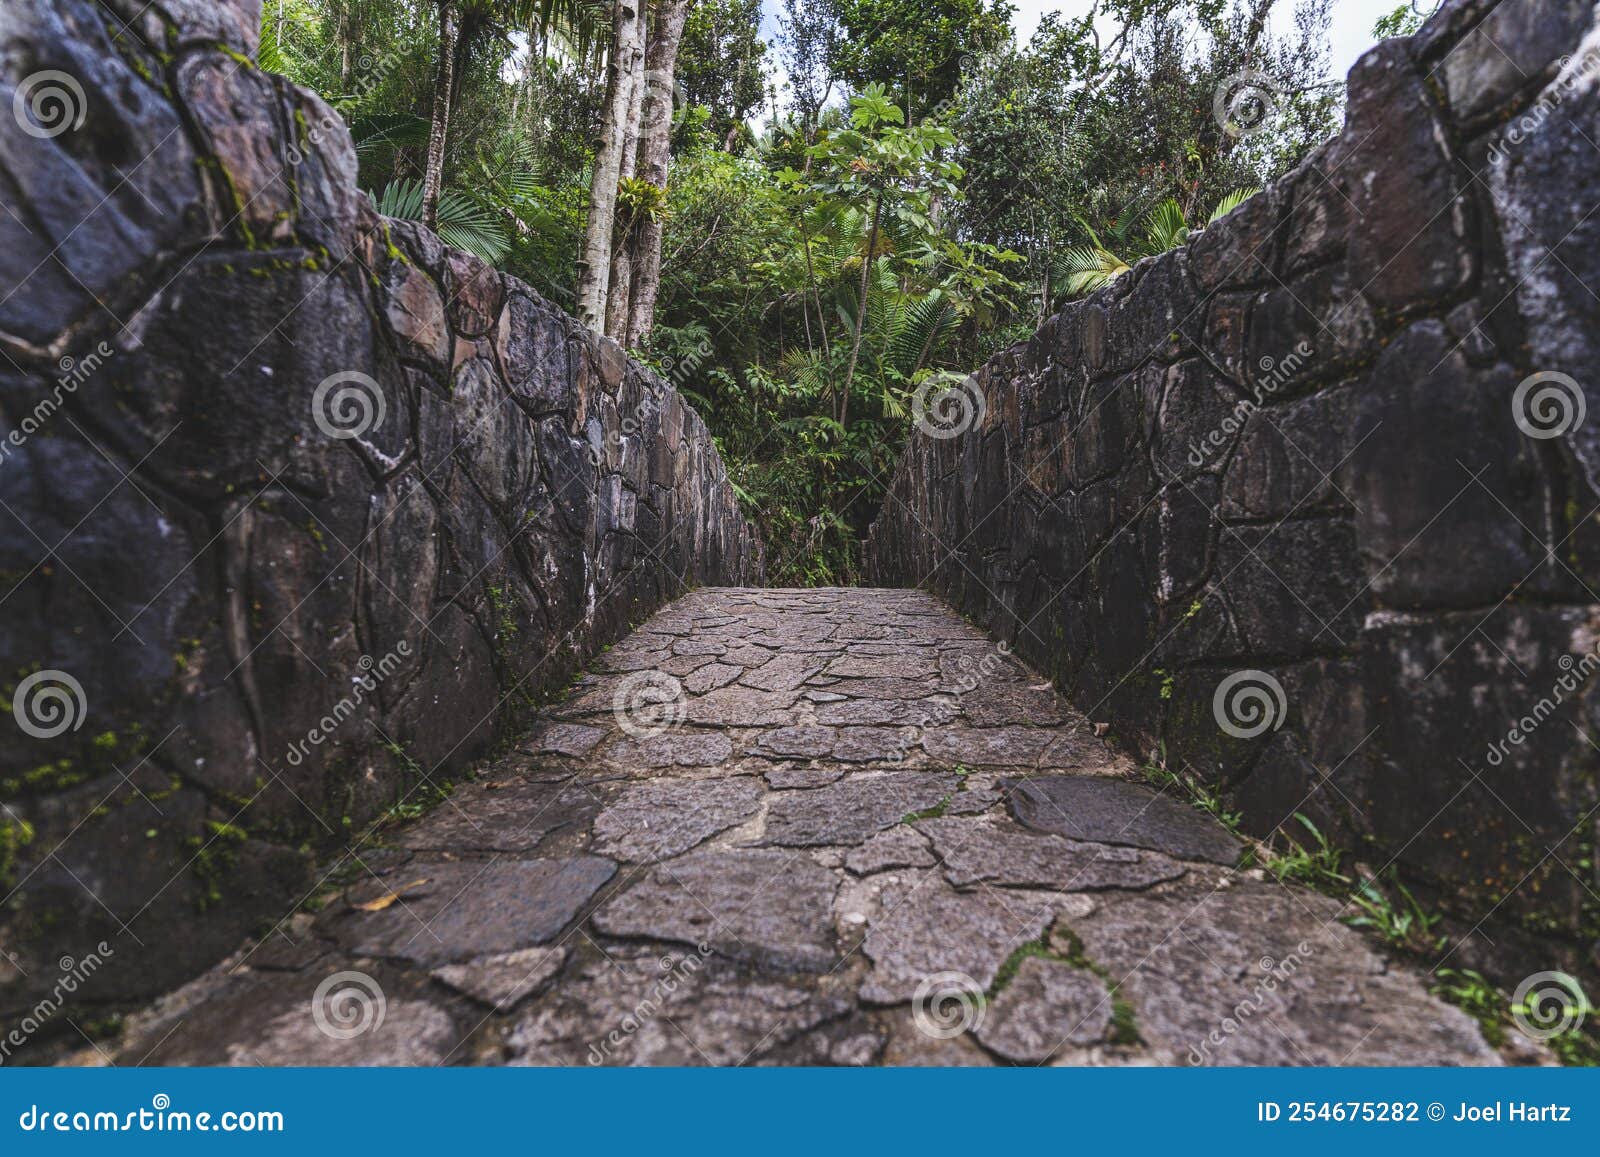 stone bridge at bano grande swim area in el yunque national forest, puerto rico